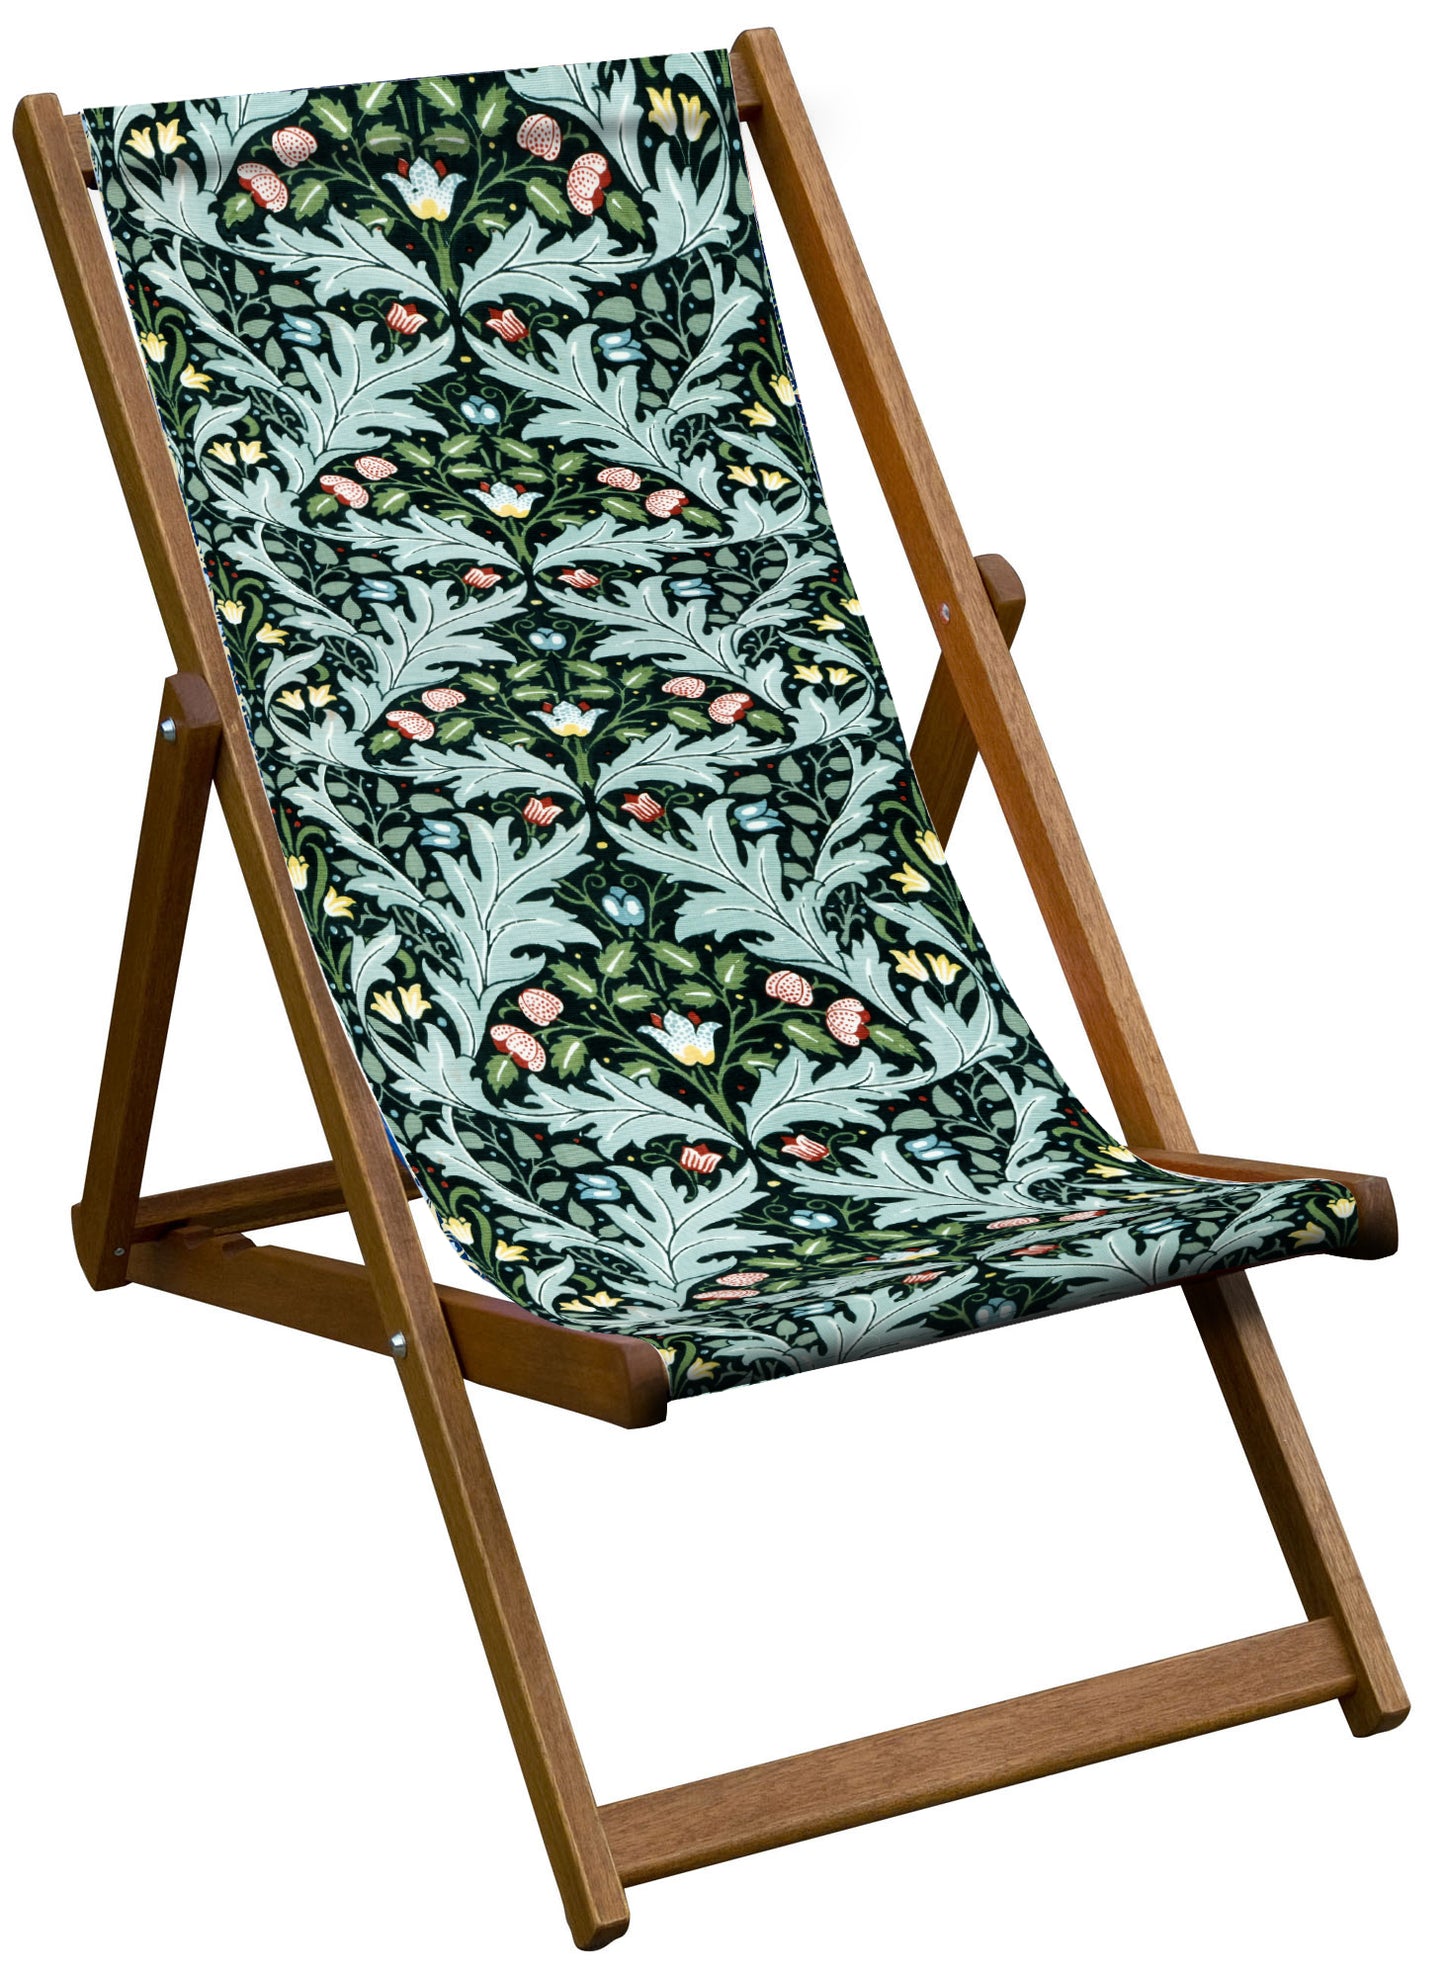 Oiled Birch Garden Deckchair William Morris Collection